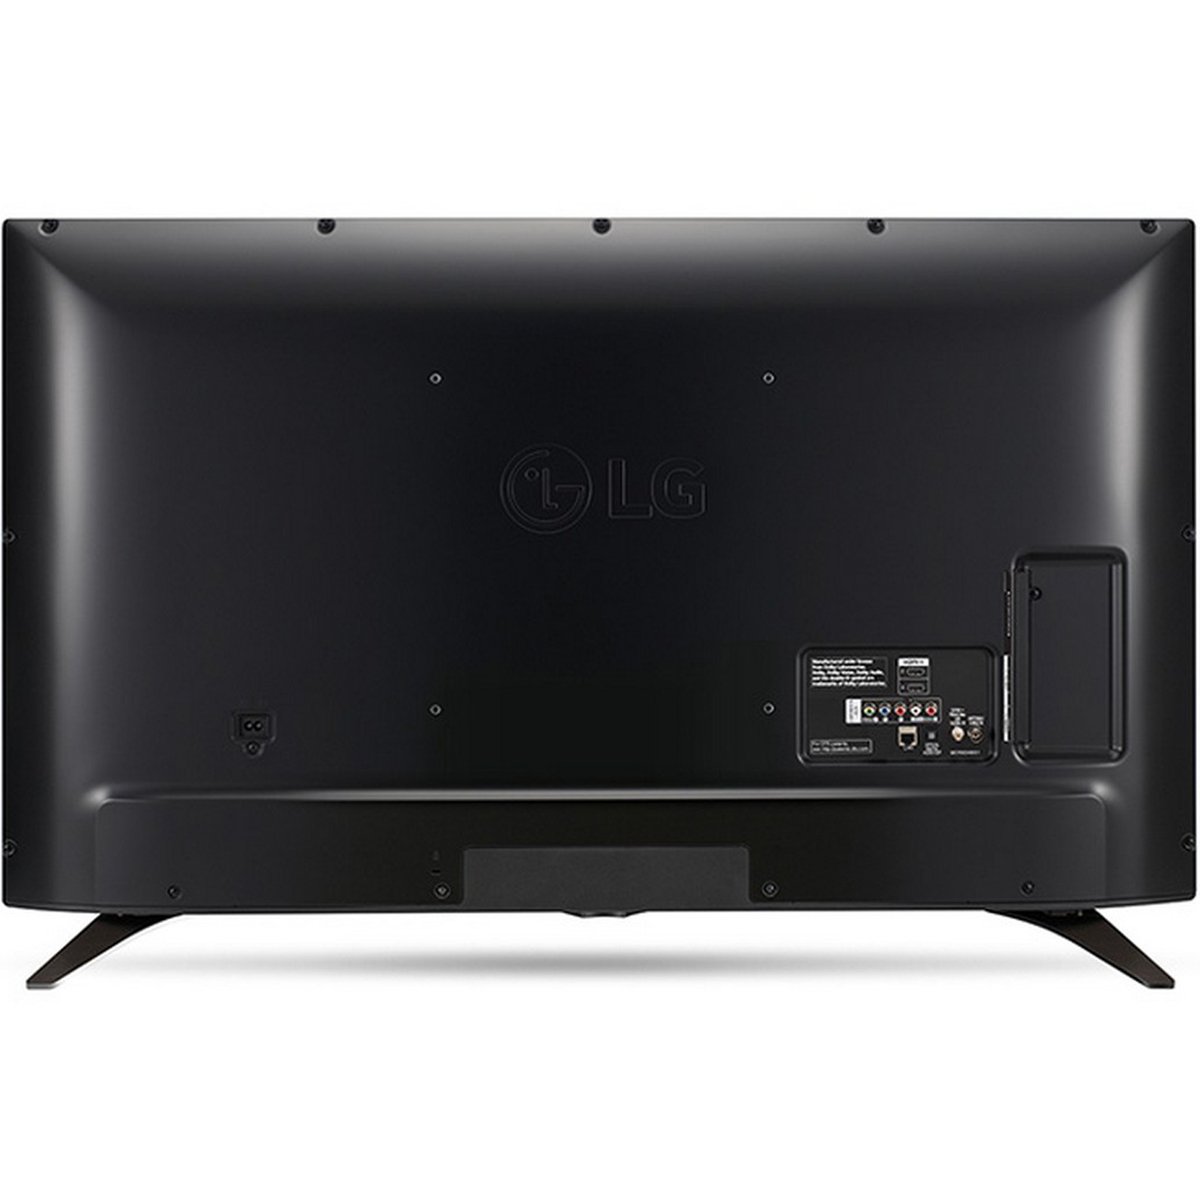 LG Full HD Smart LED TV 55LJ615V 55inch